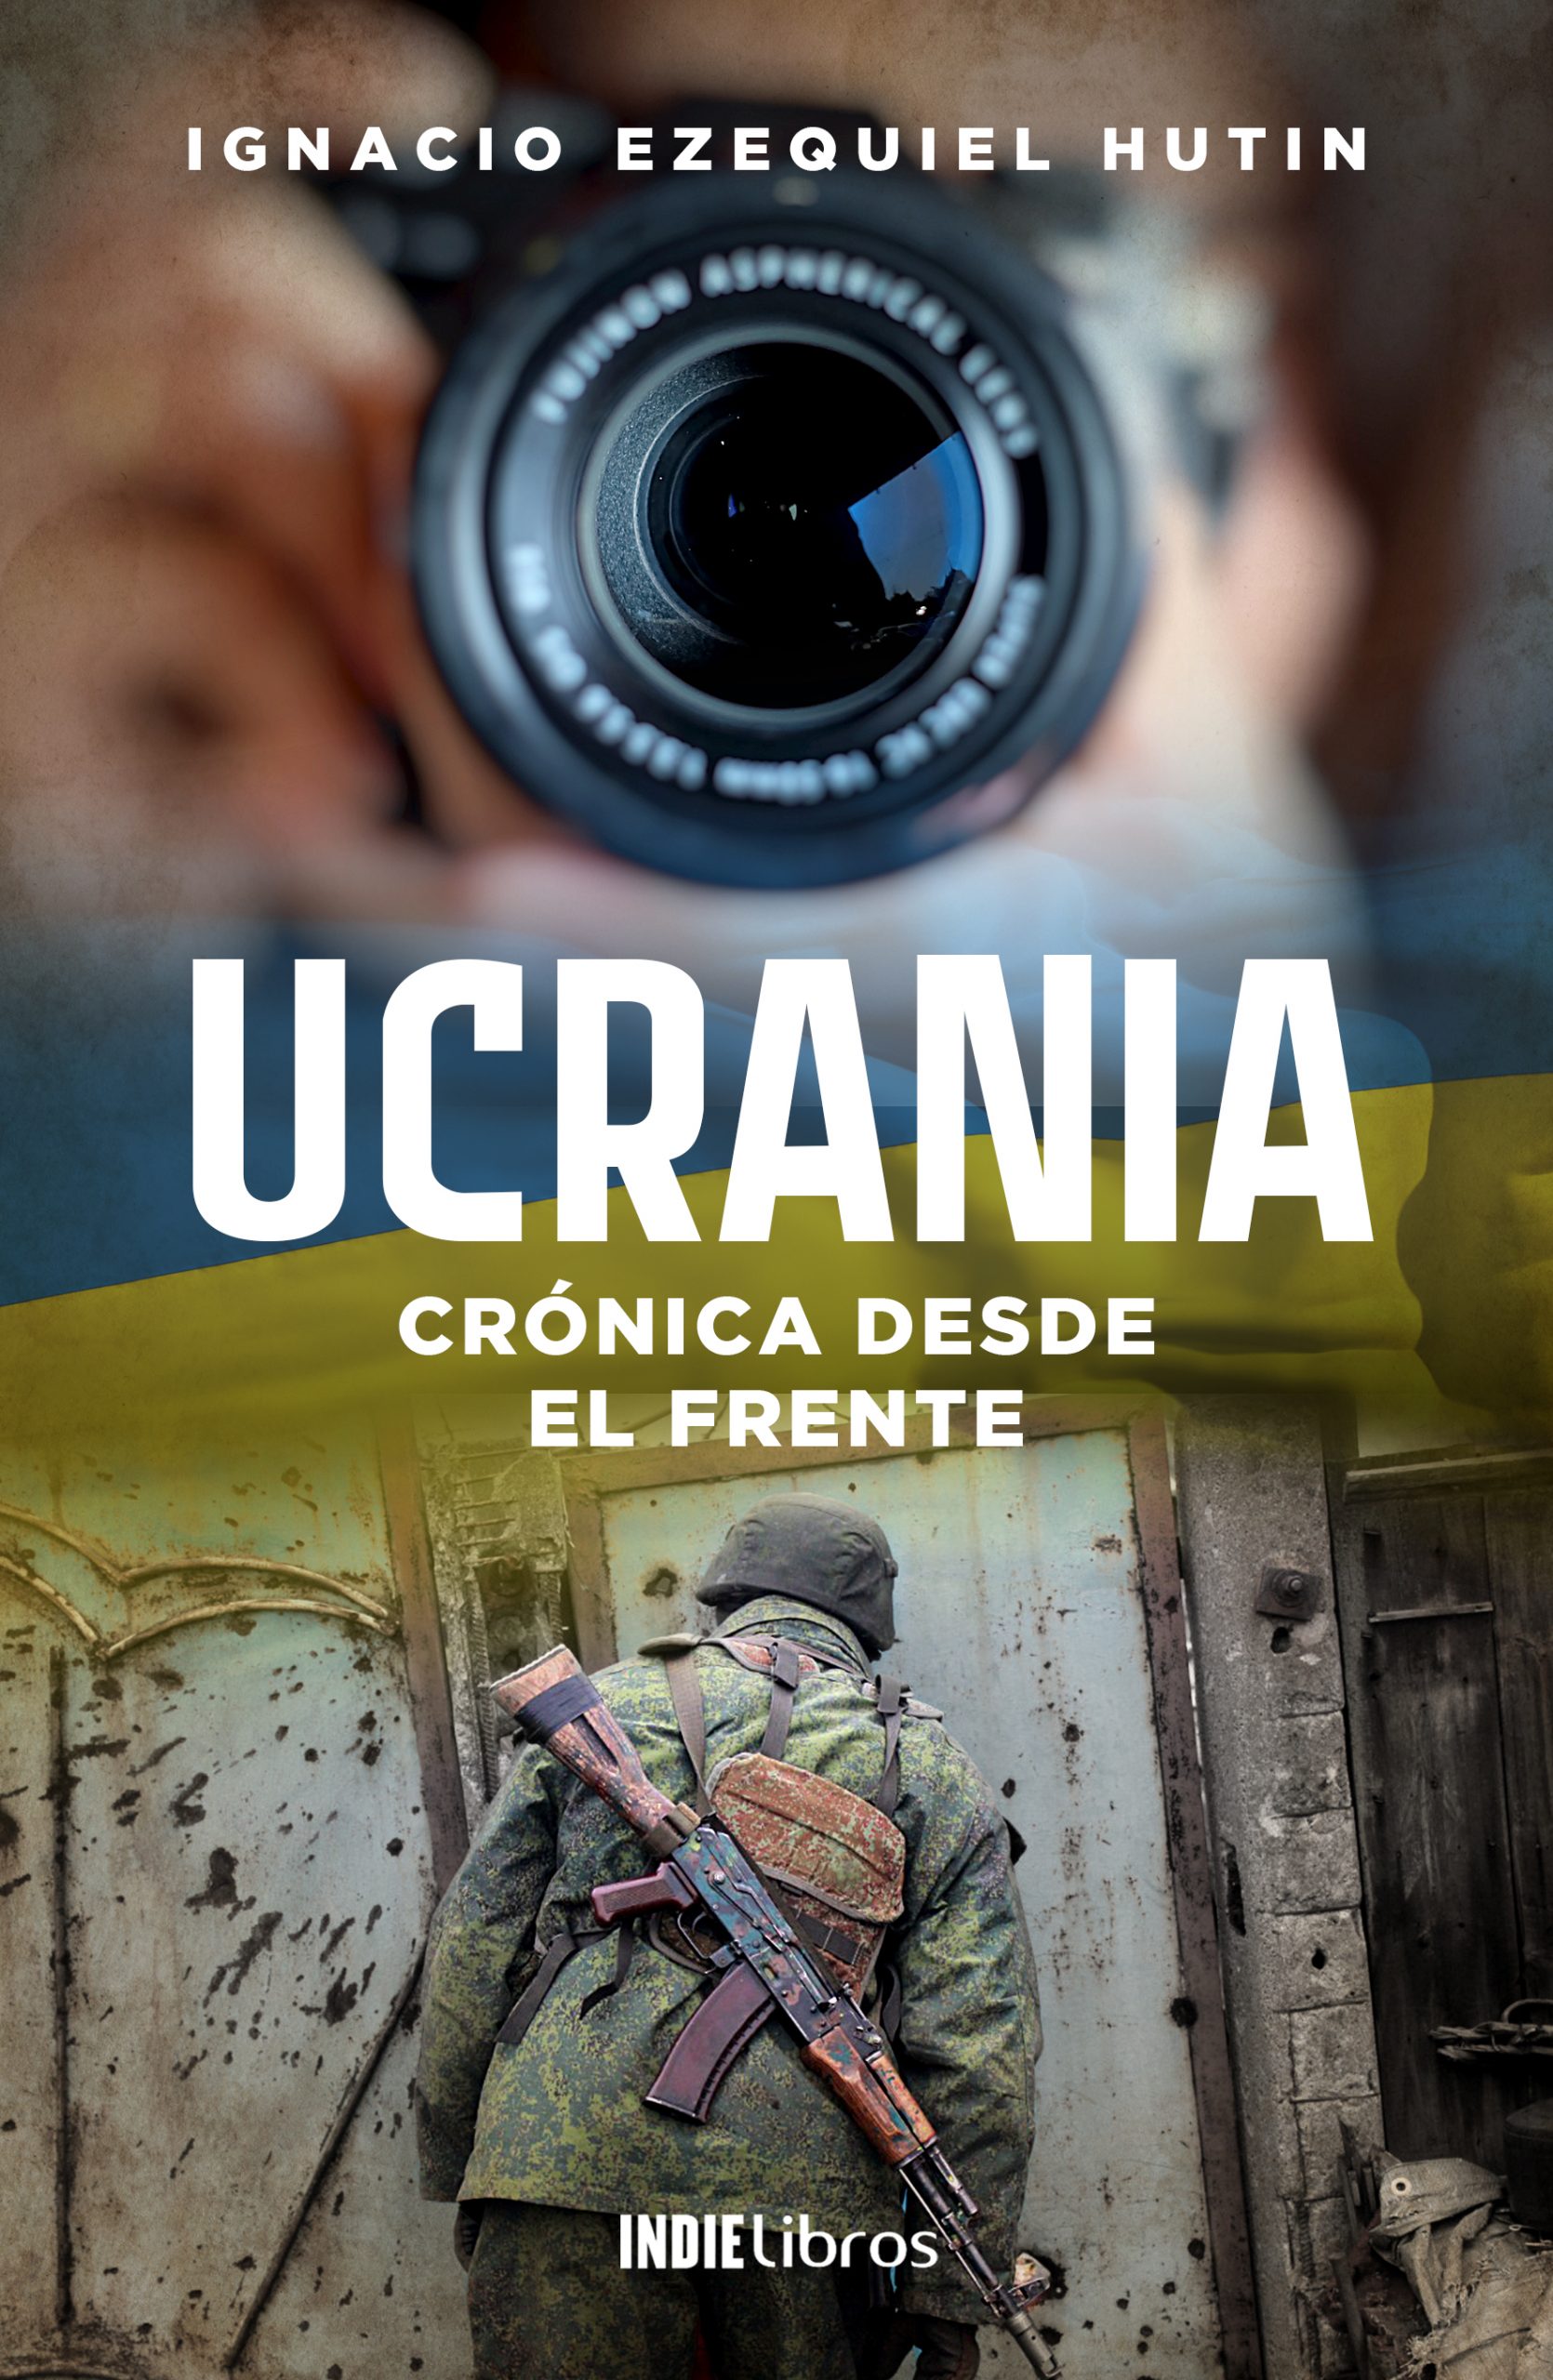 ucrania, crónica desde el frente